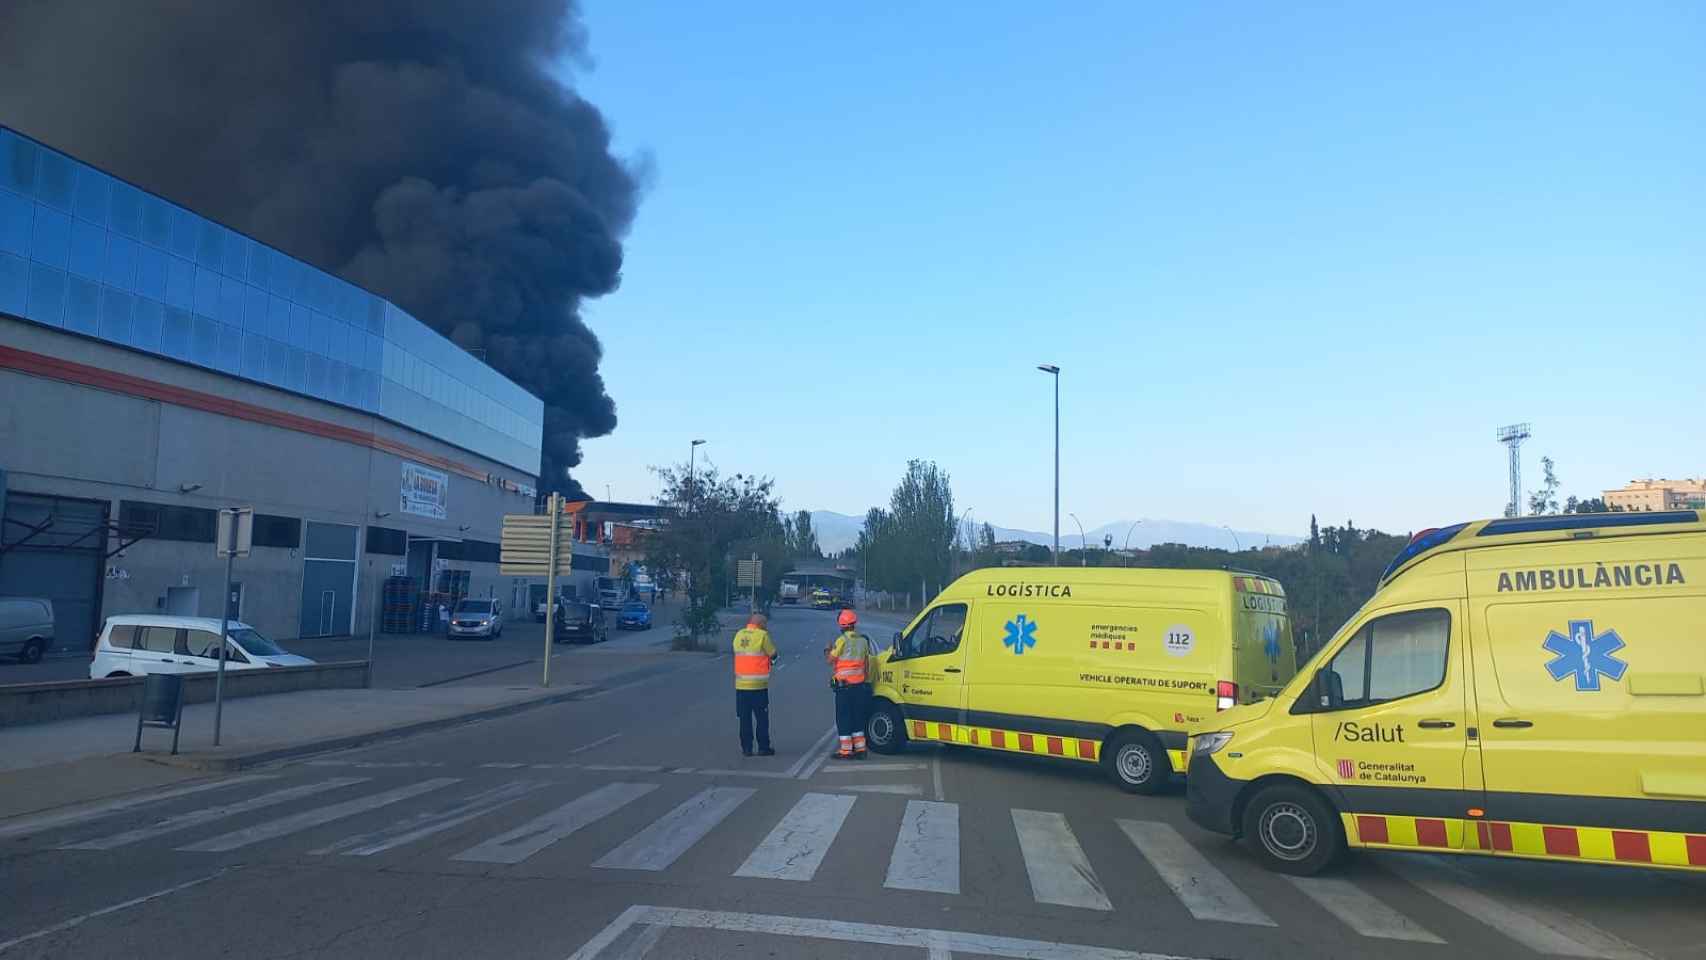 El incendio en una nave industrial de Granollers (Barcelona)